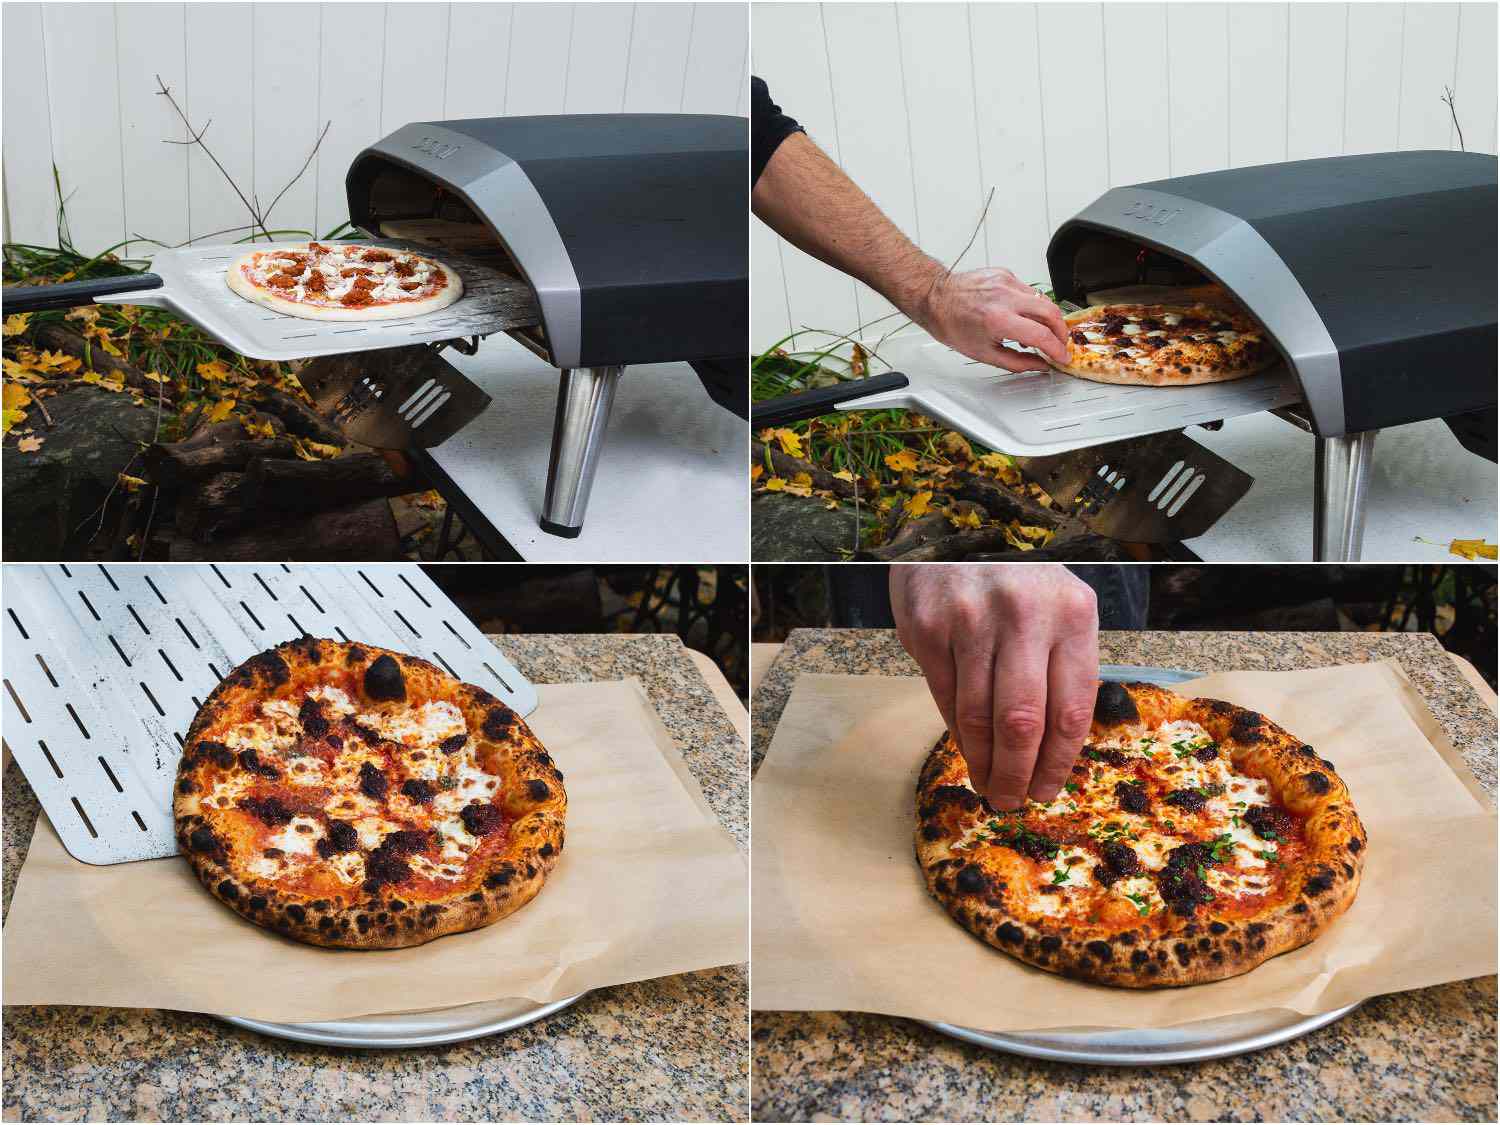 拼贴画展示了在户外的披萨烤箱中烹饪的努佳披萨